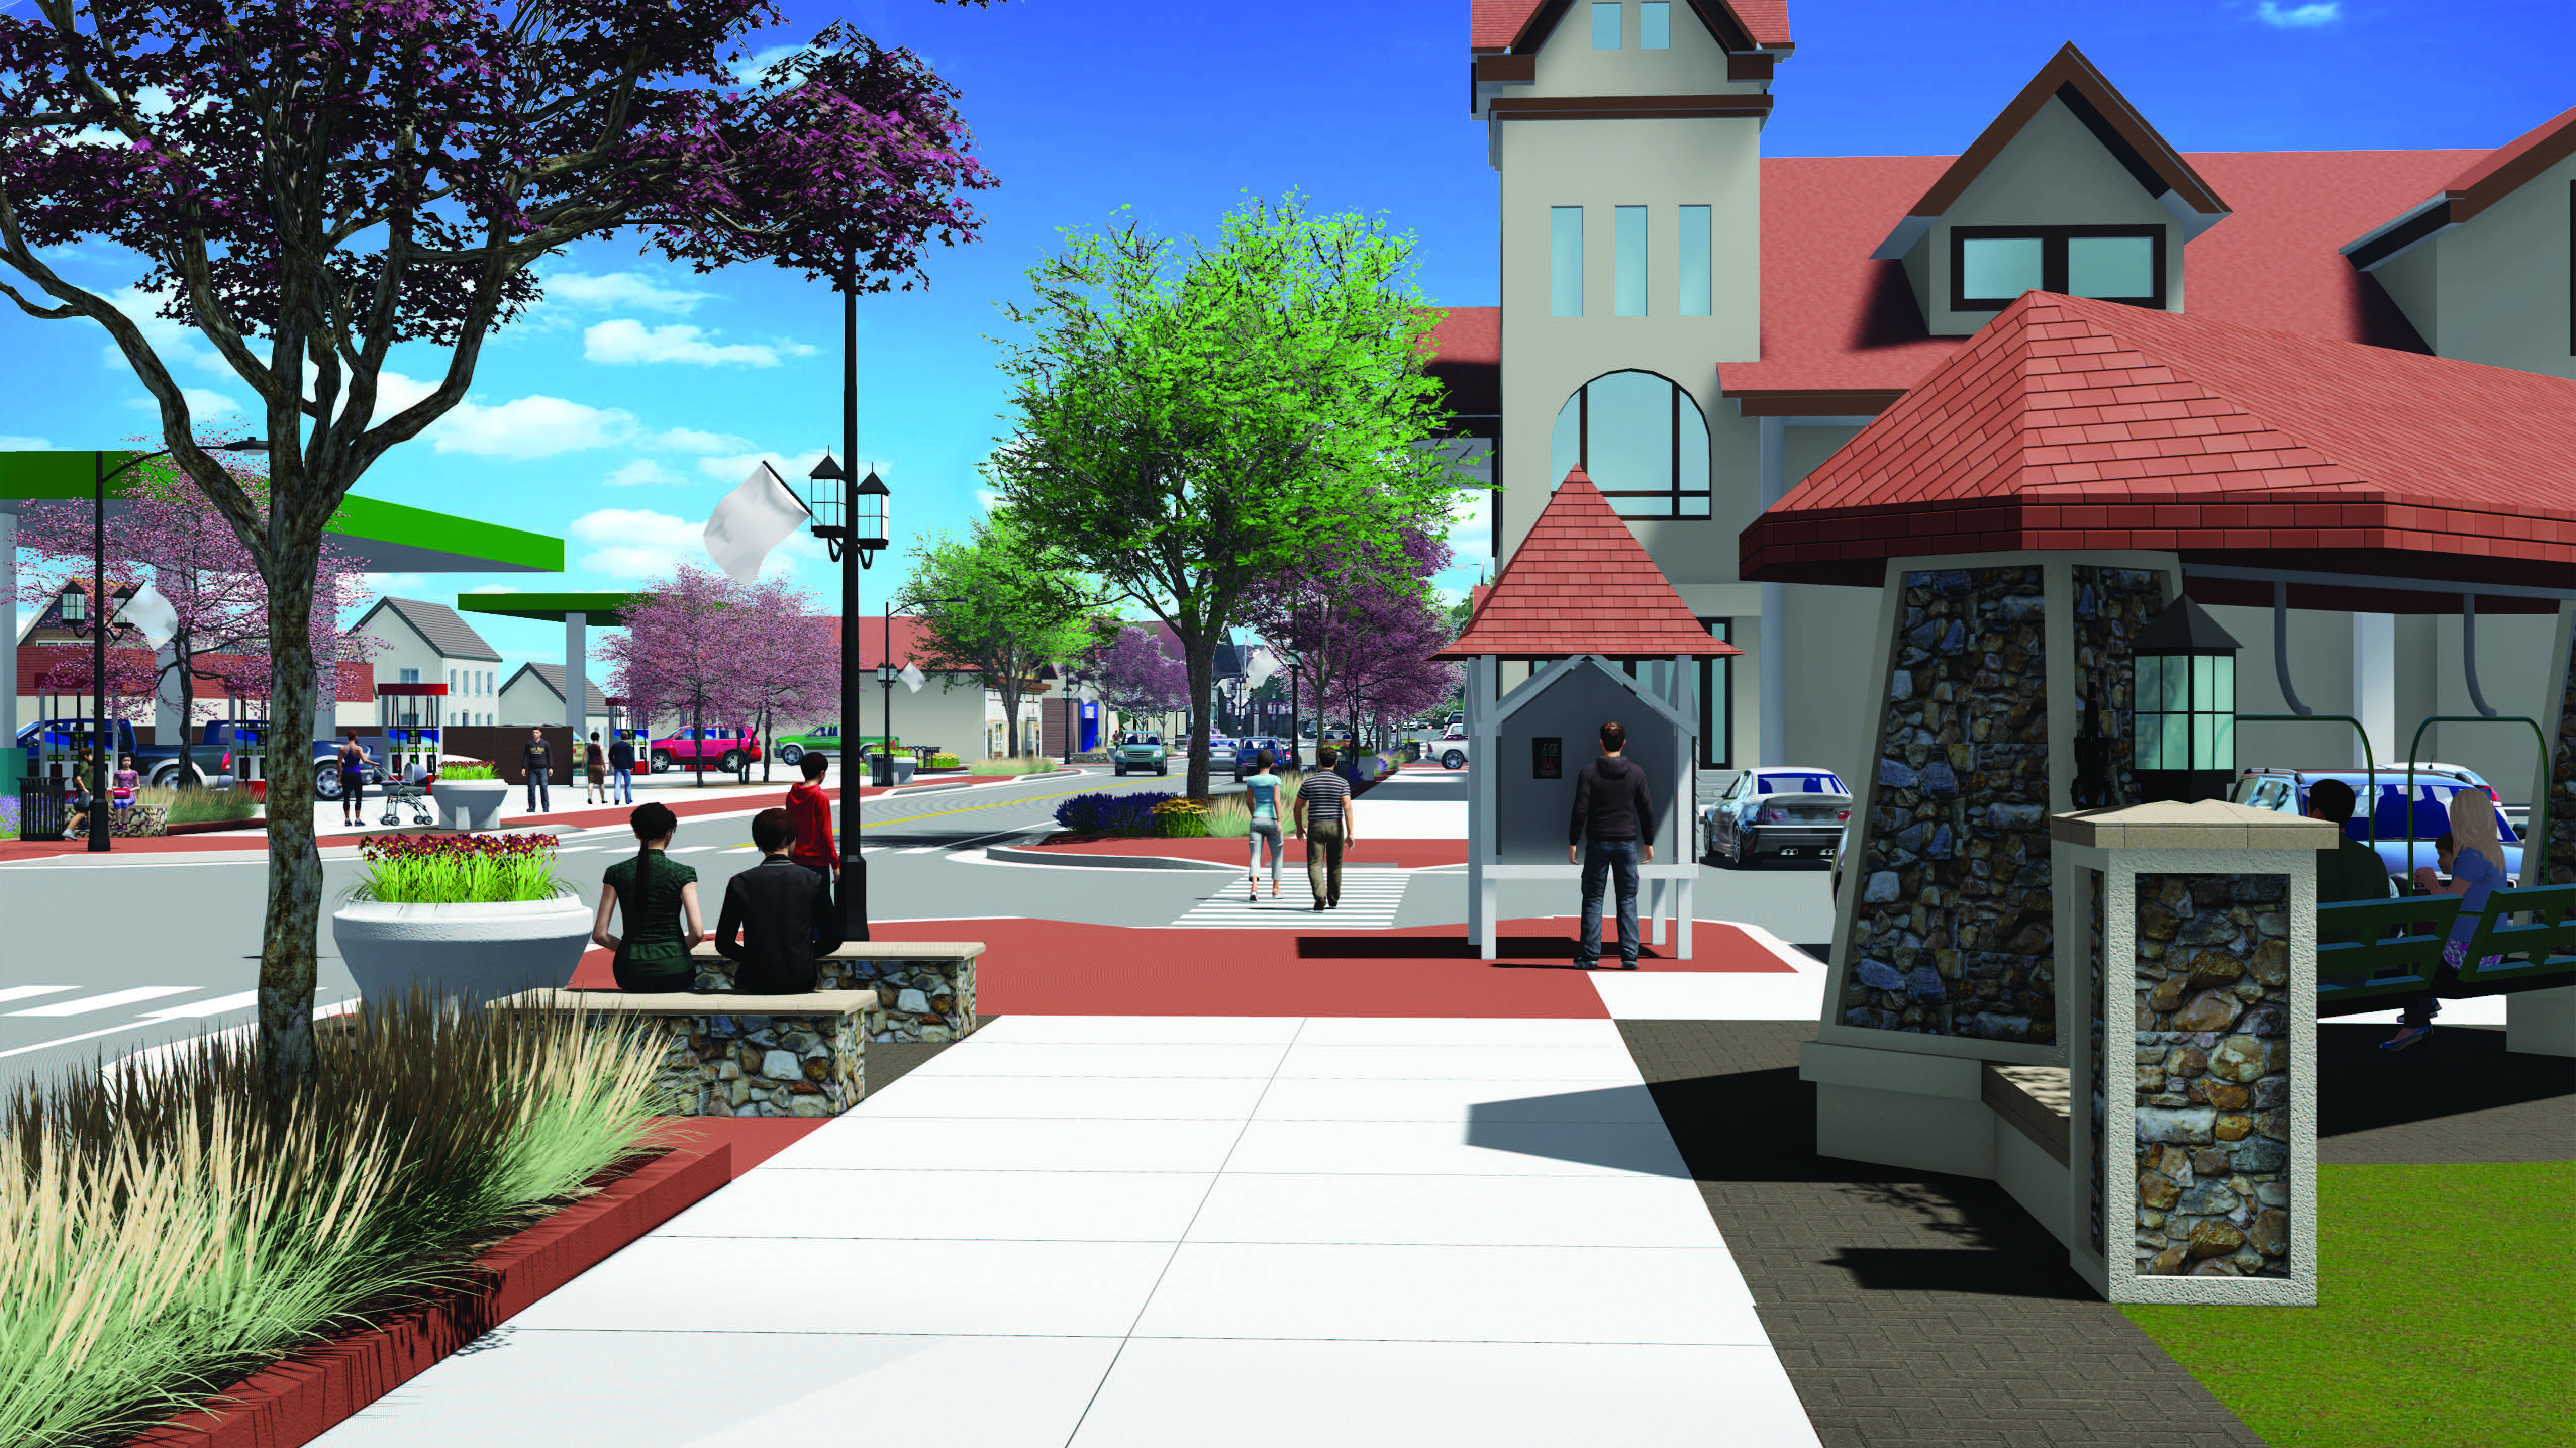 Rendering of Biwabik Main Street Complete Streets design concept